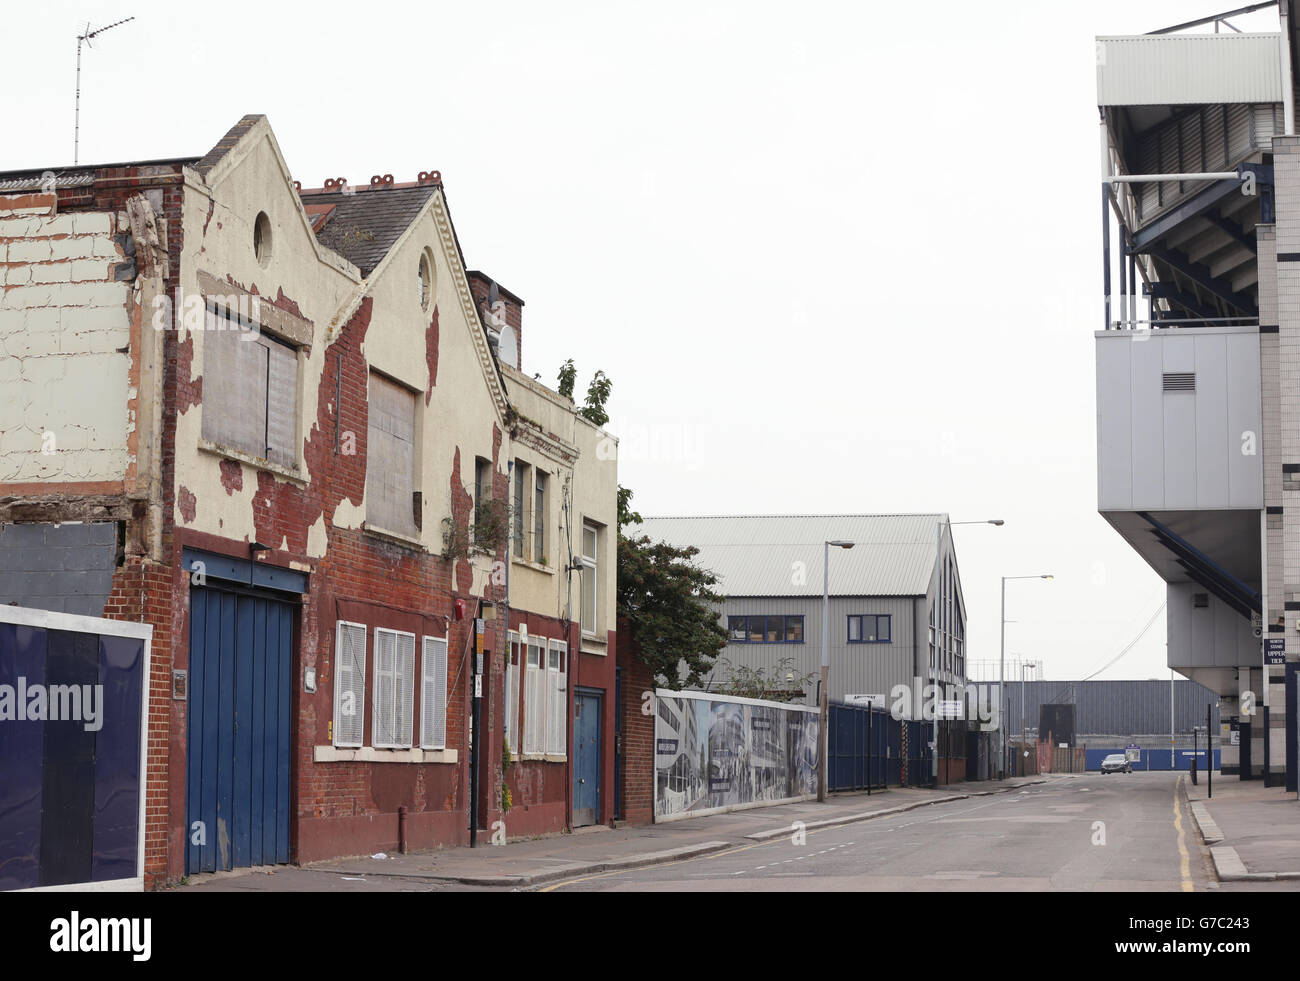 Una vista de Archway Steel Metal Works (fondo a la izquierda) en Paxton Rd, al norte de Londres, que está al lado del estadio de fútbol Tottenham Hotspur's White Hart Lane. Foto de stock